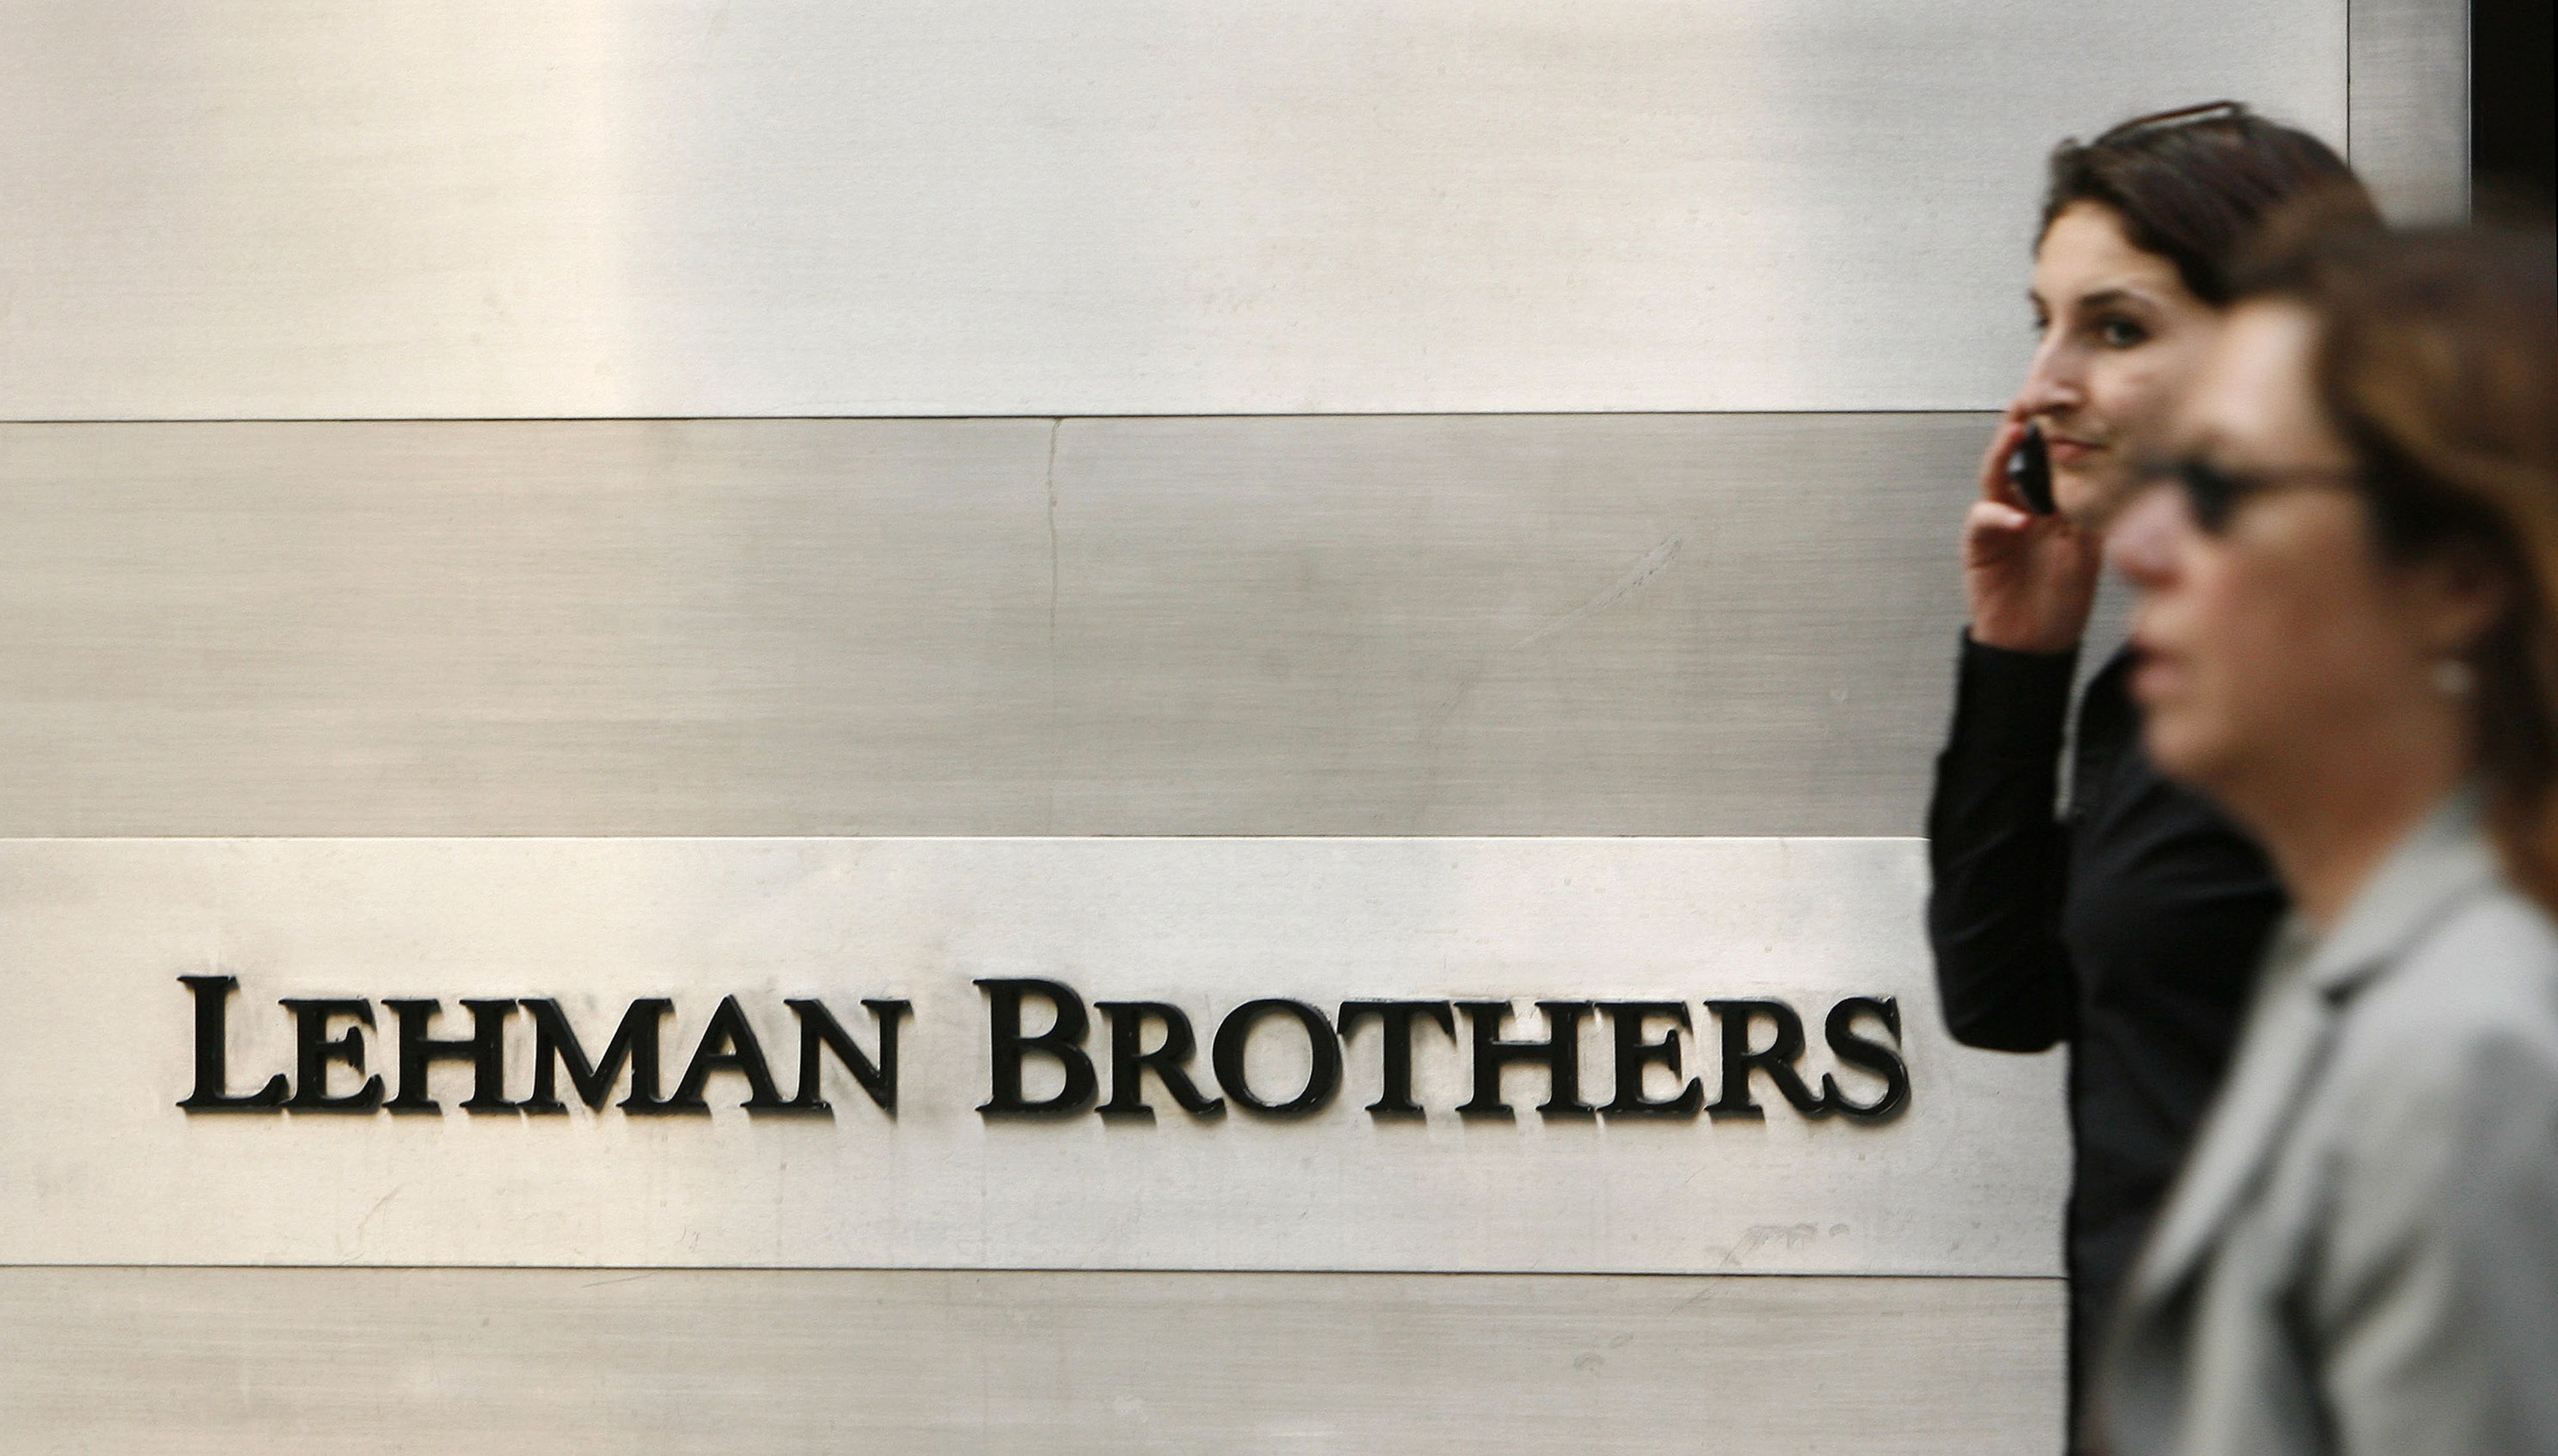 Dos mujeres andan por delante del cartel de Lehman Brothers, el banco que resultó en la mayor quiebra de Estados Unidos.